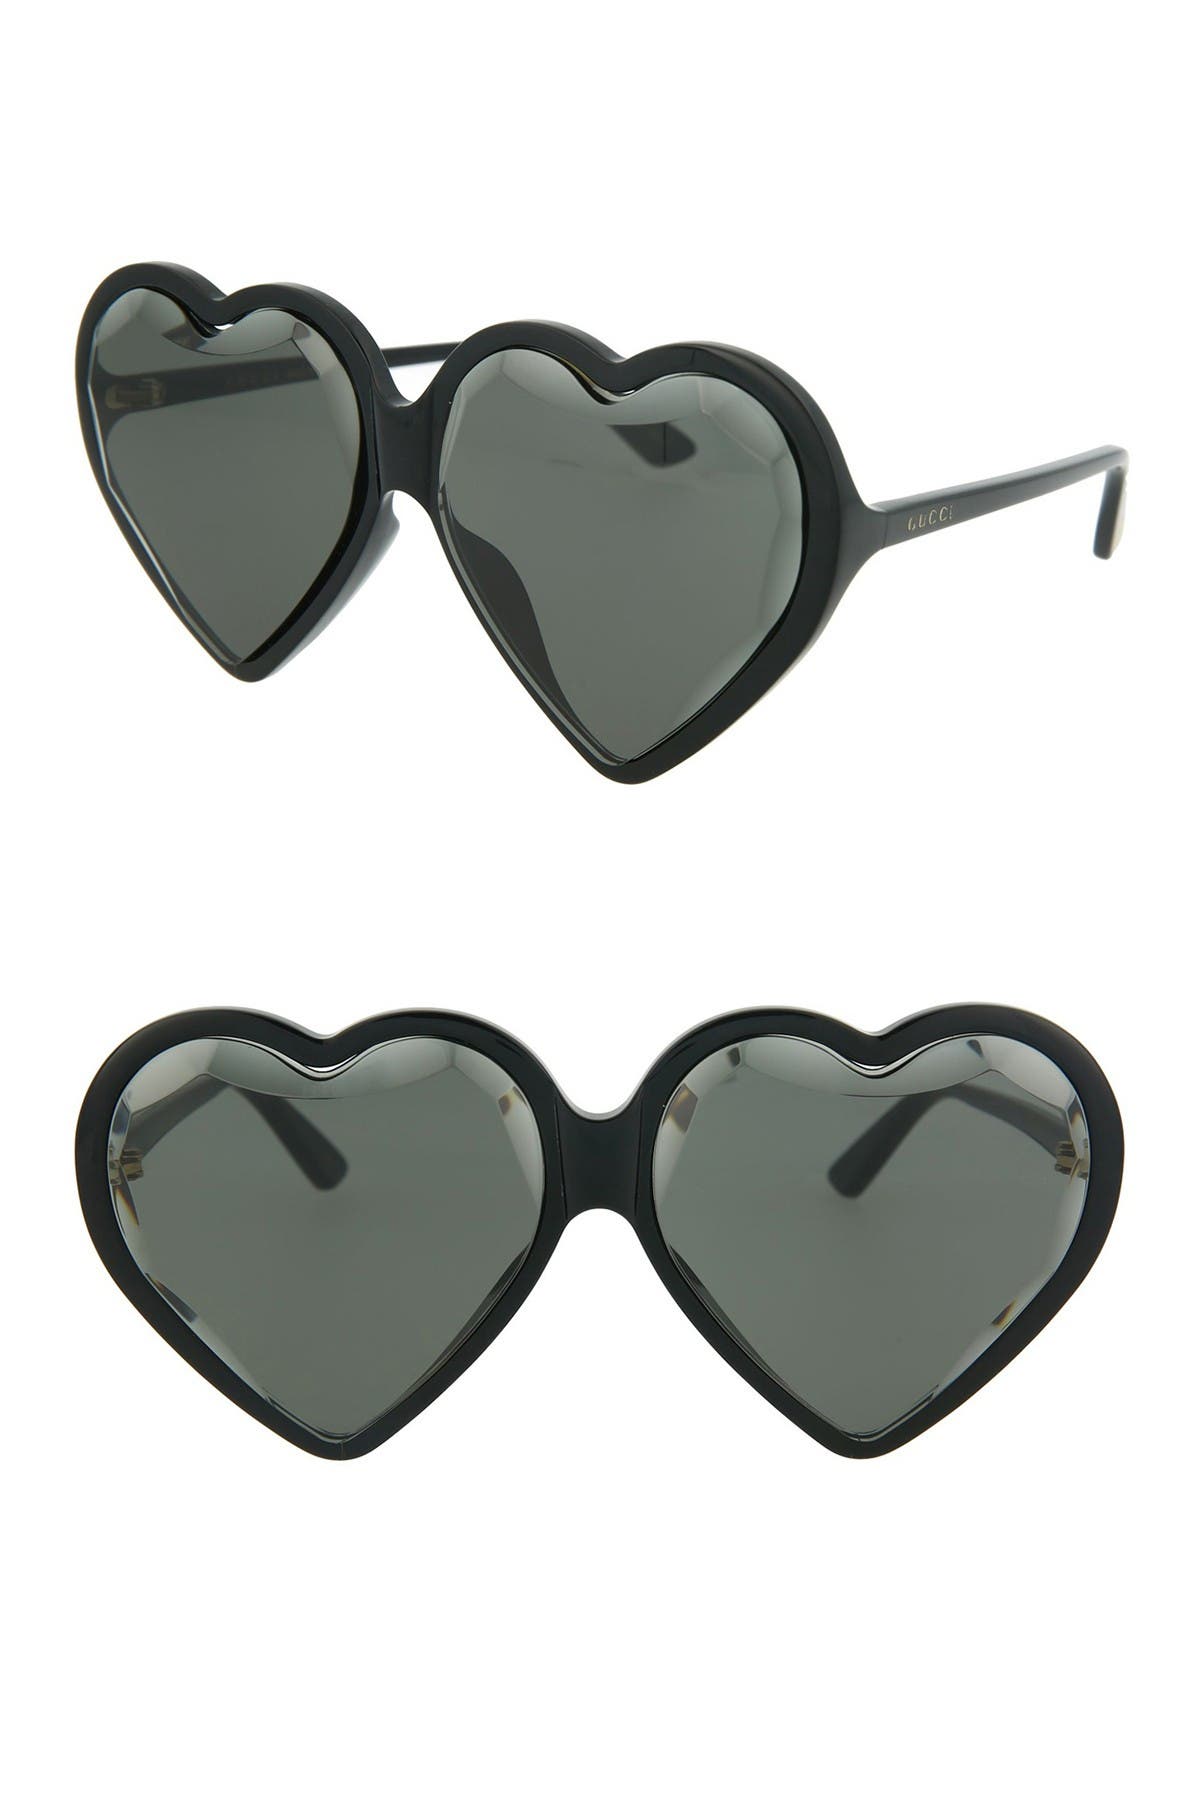 gucci heart glasses